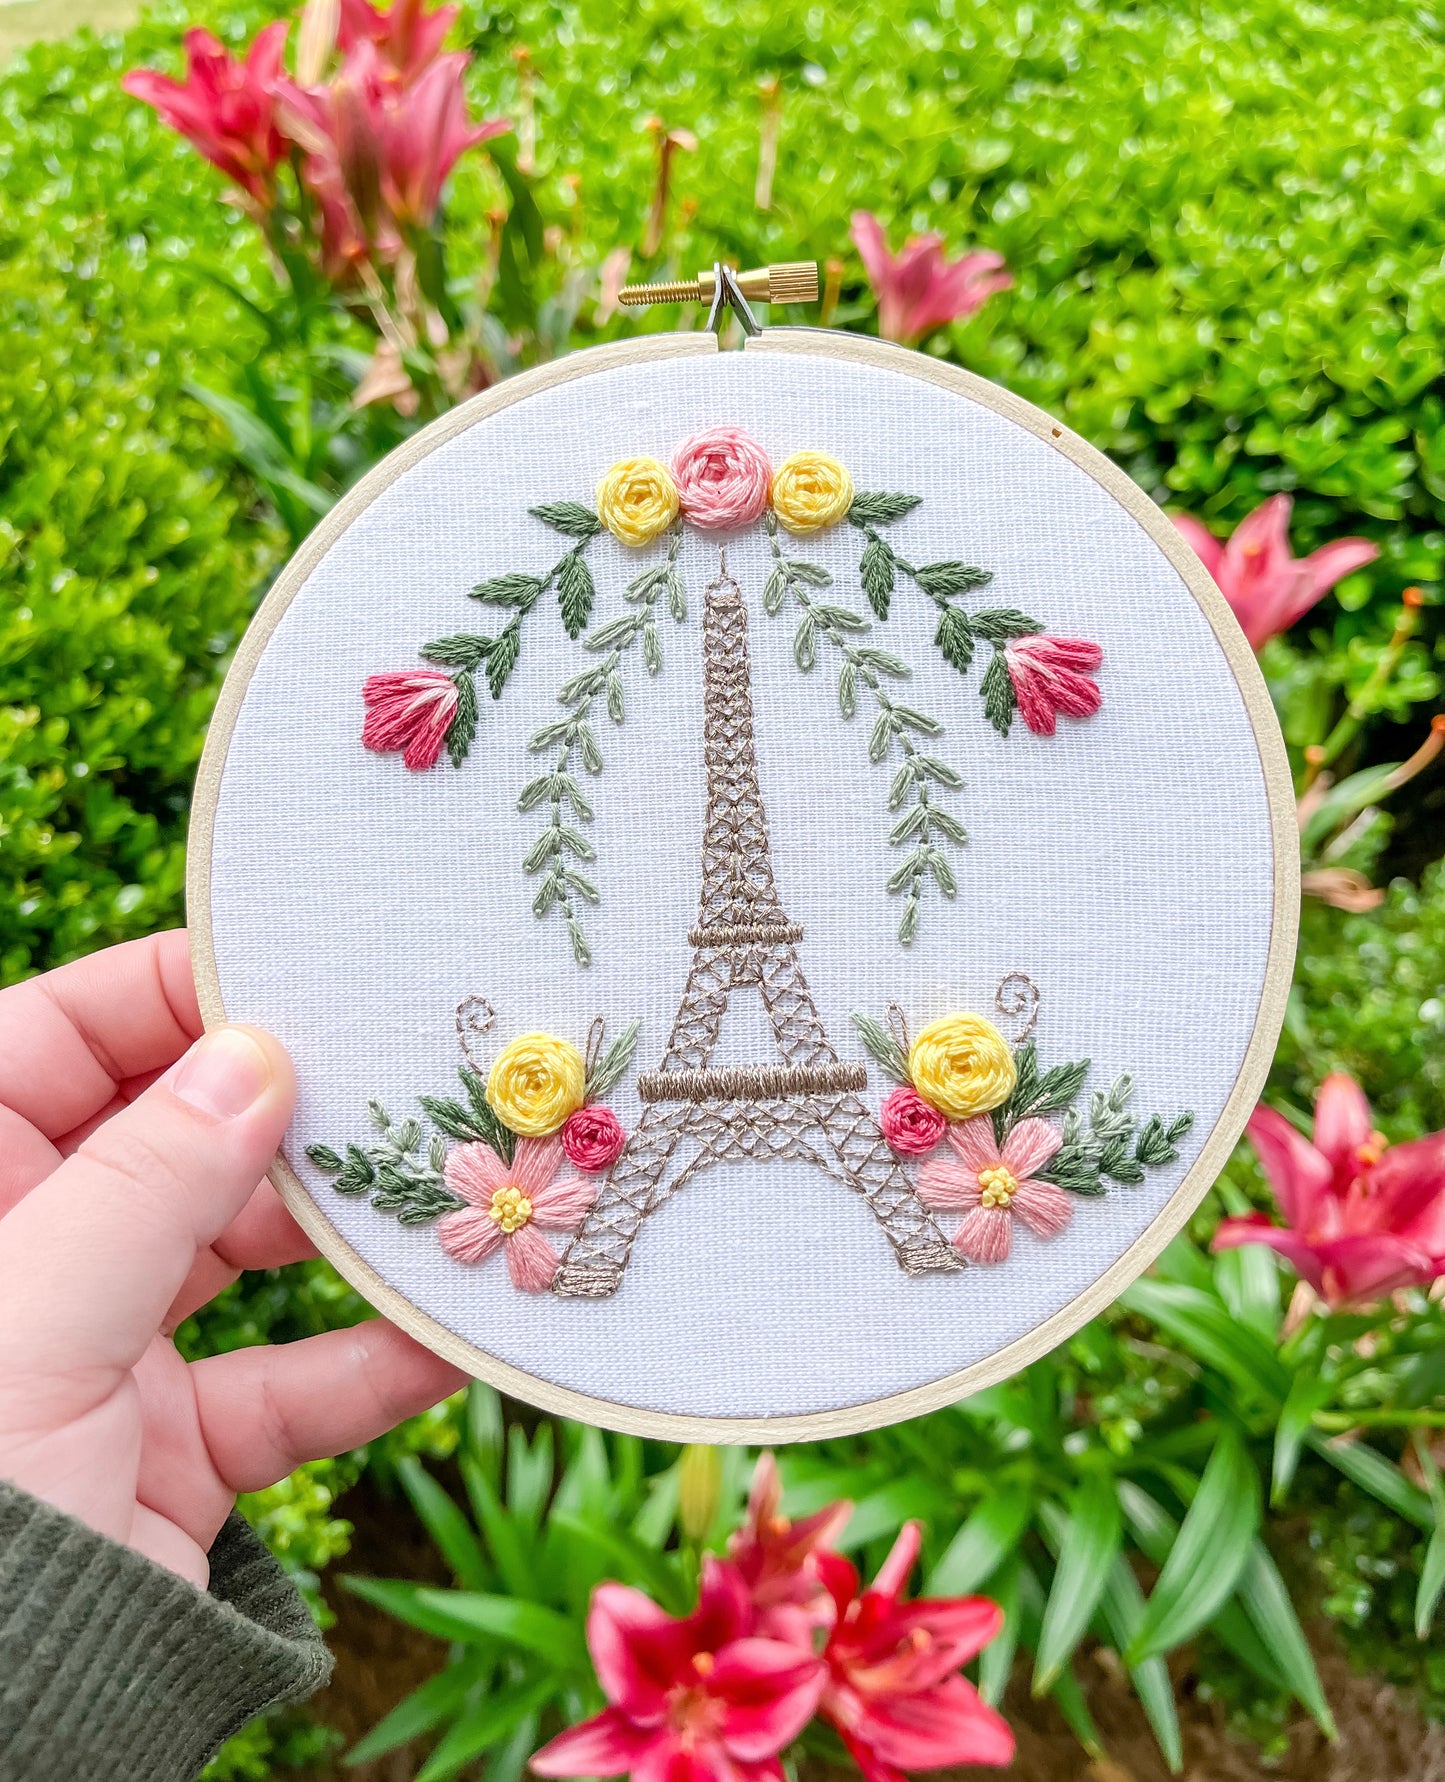 PDF Pattern - La Fleur Eiffel, Intermediate Embroidery Pattern